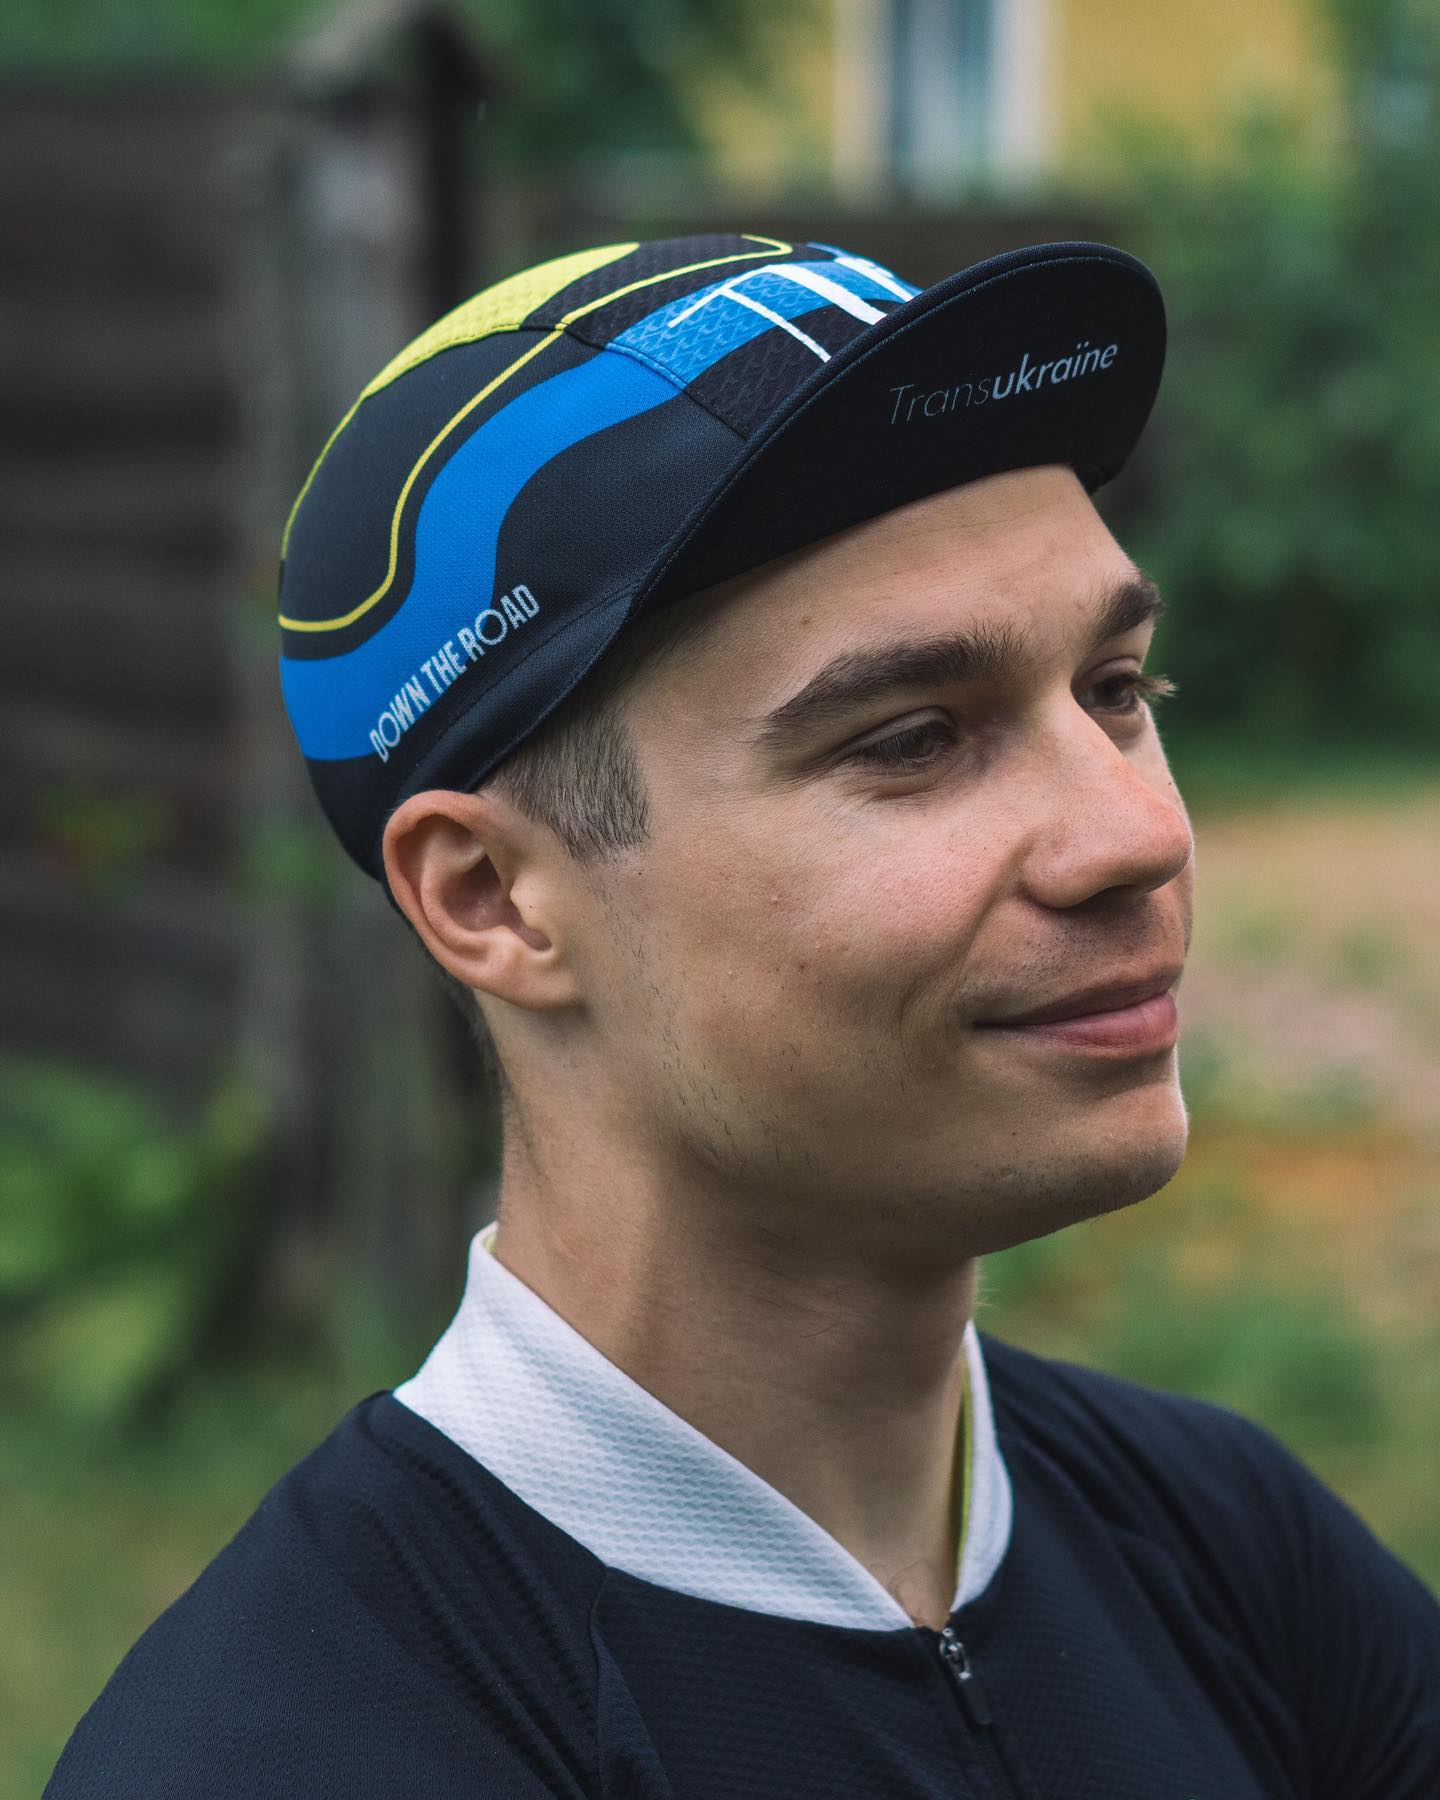 Gorra ciclista personalizada Triathlon Buddies